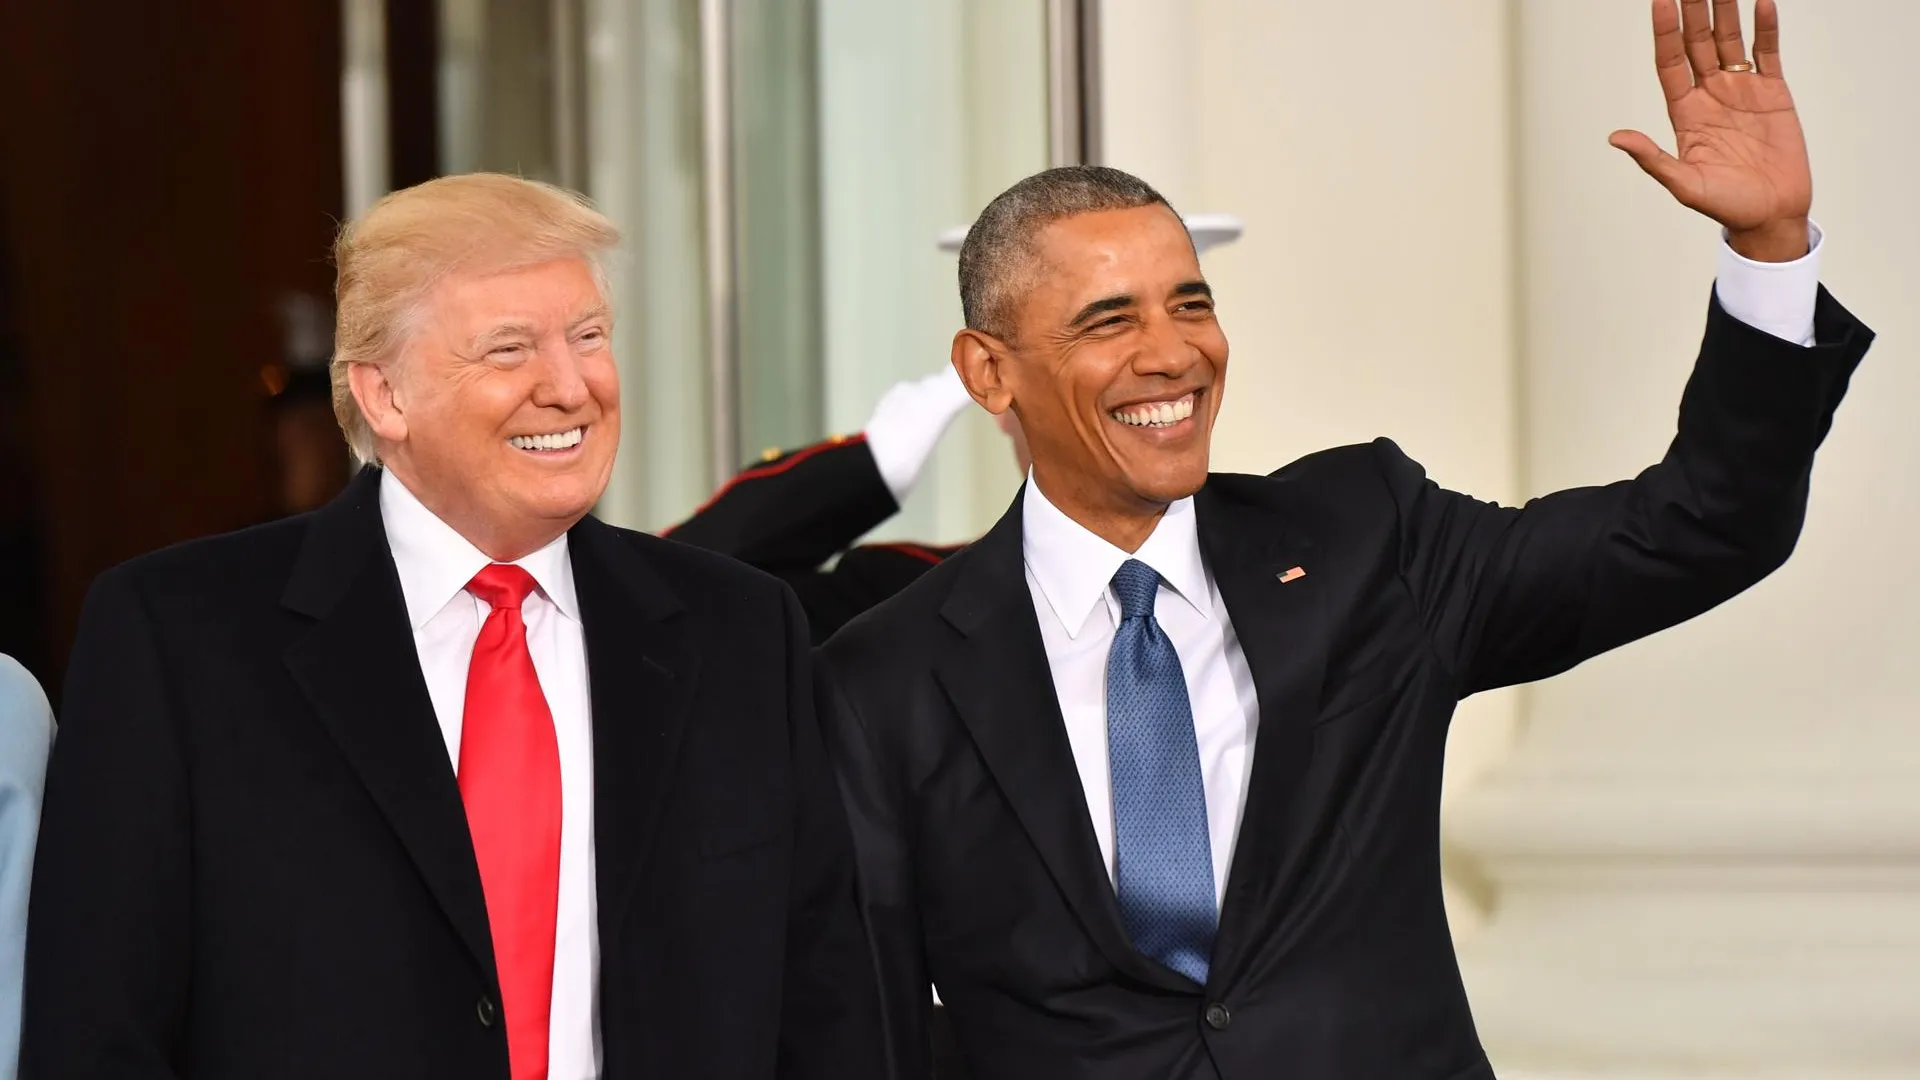 Дональд Трамп и Барак Обама. Фото: Kevin Dietsch / dpa